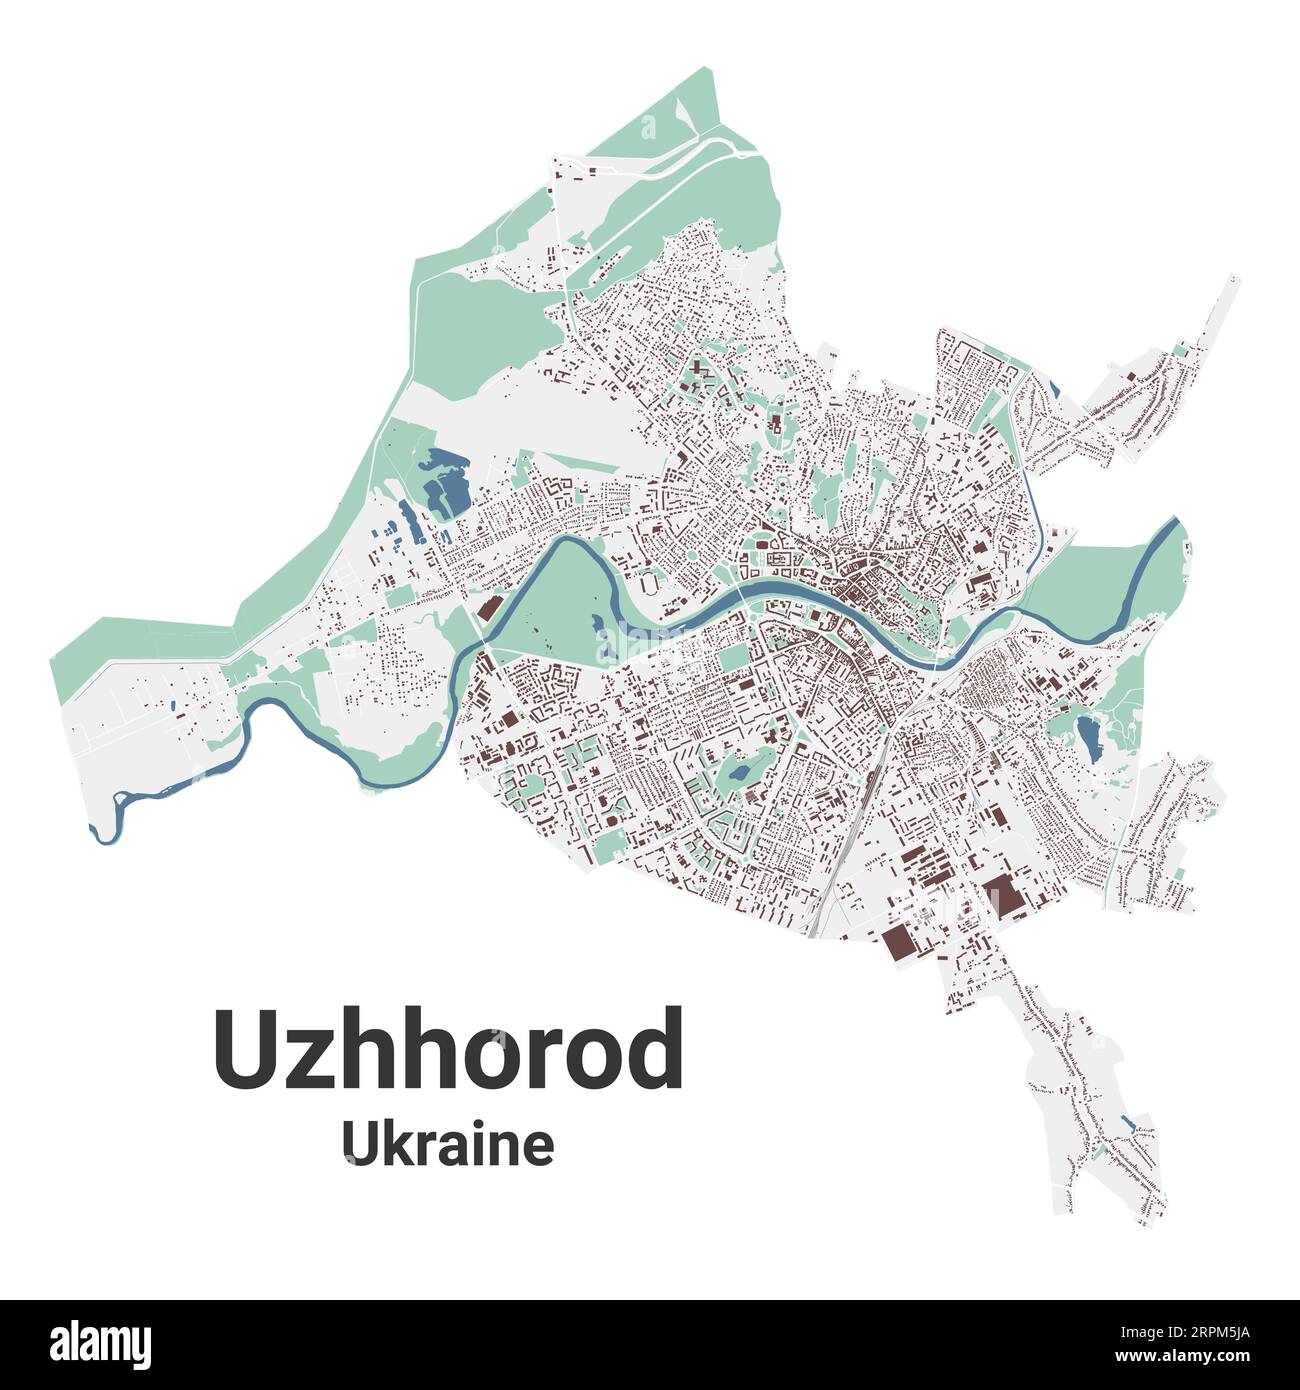 Mappa di Uzhhorod, città in Ucraina. Mappa dell'area amministrativa municipale con edifici, fiumi e strade, parchi e ferrovie. Illustrazione vettoriale. Illustrazione Vettoriale